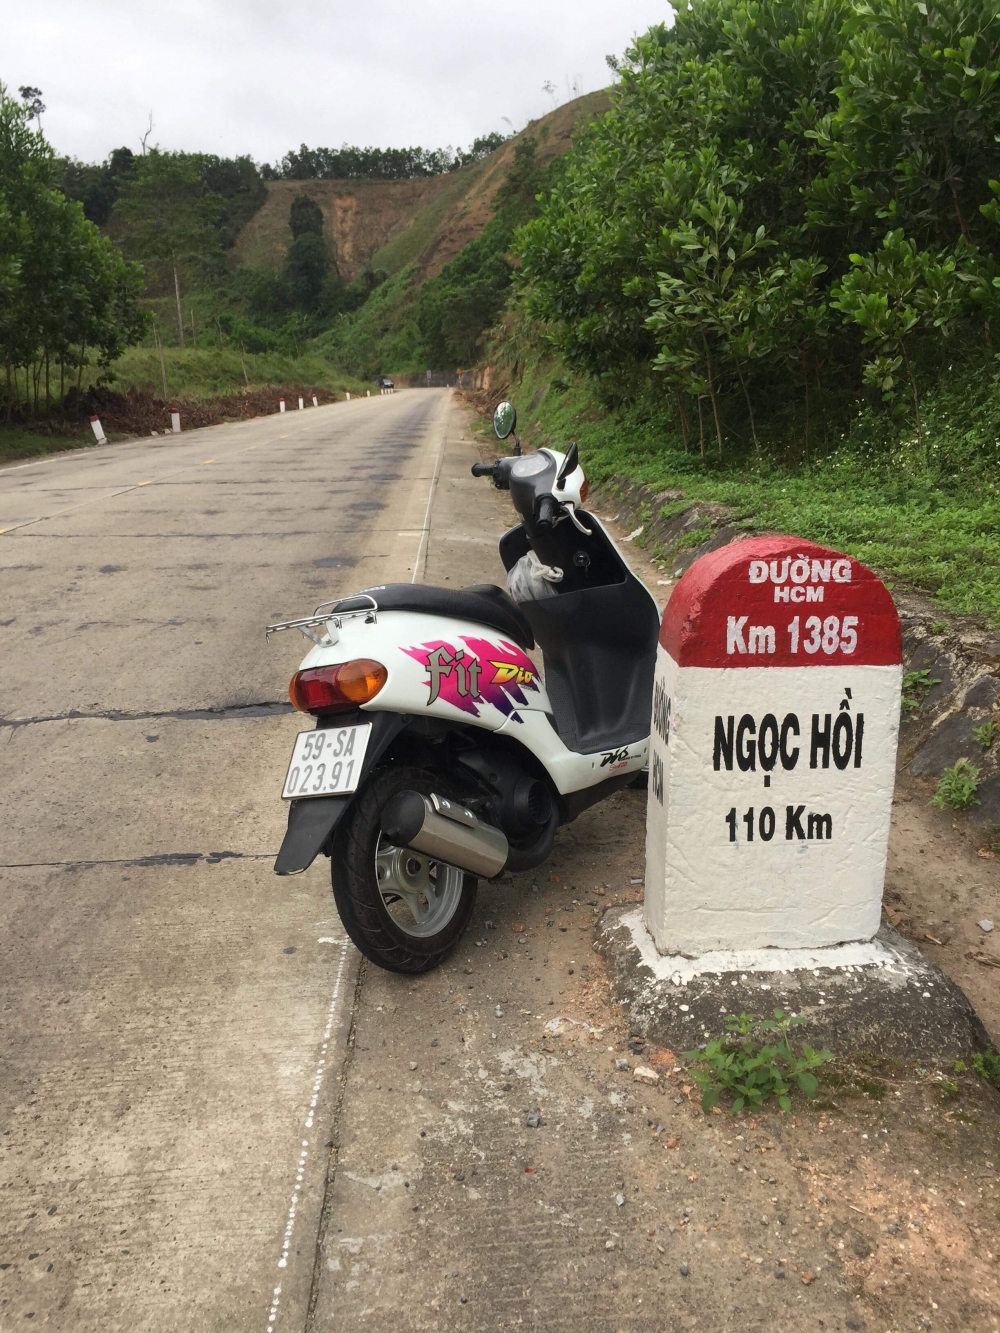 Biker Viet di Phuot Xuyen Viet 30 ngay voi chiec Honda Dio Fit - 17